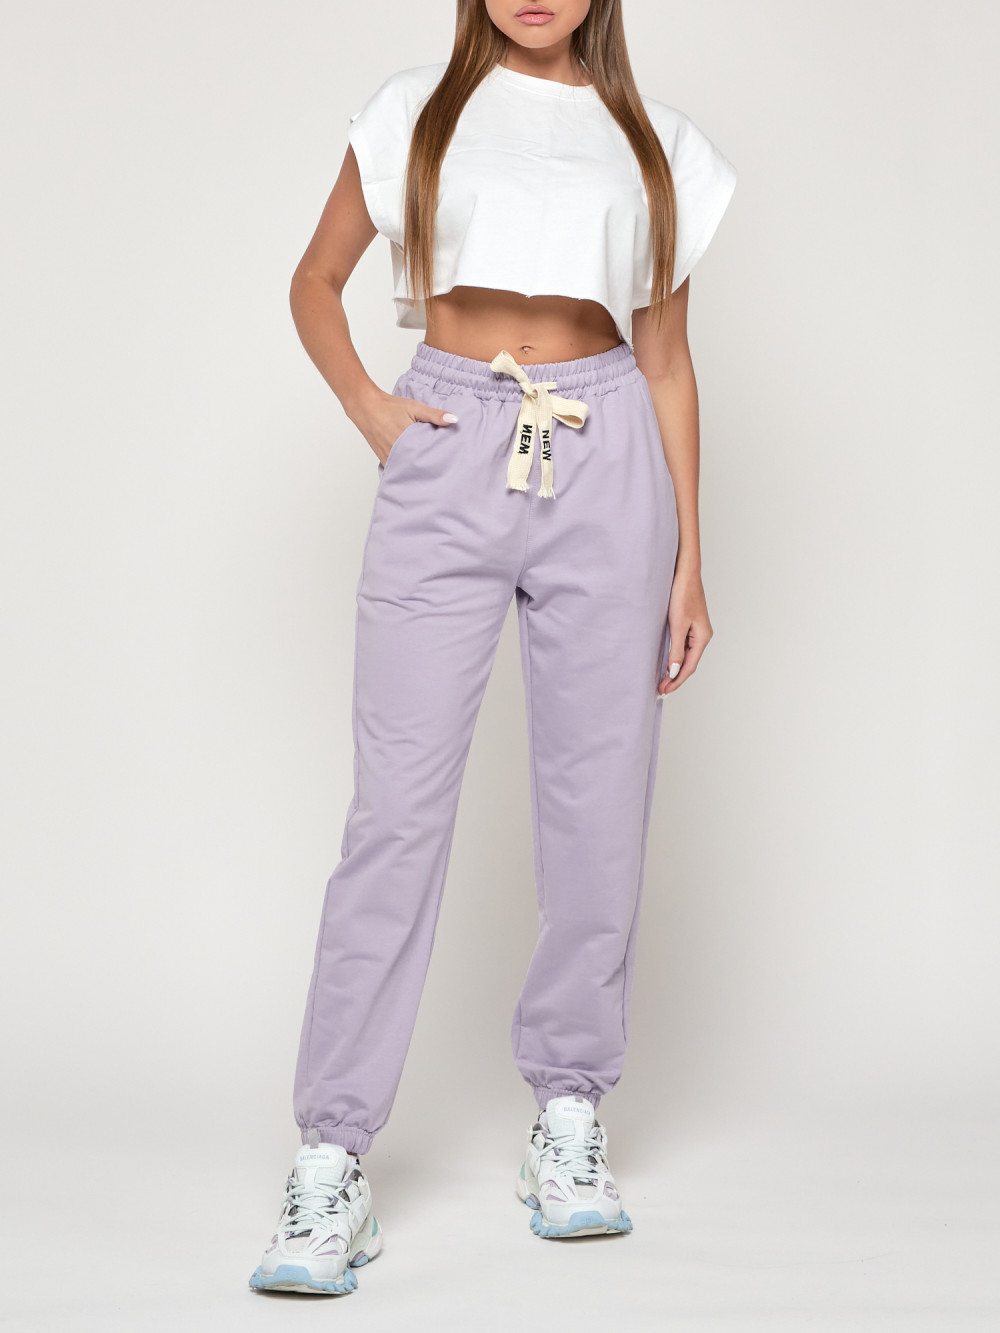 Спортивные брюки женские NoBrand AD316 фиолетовые 58 RU